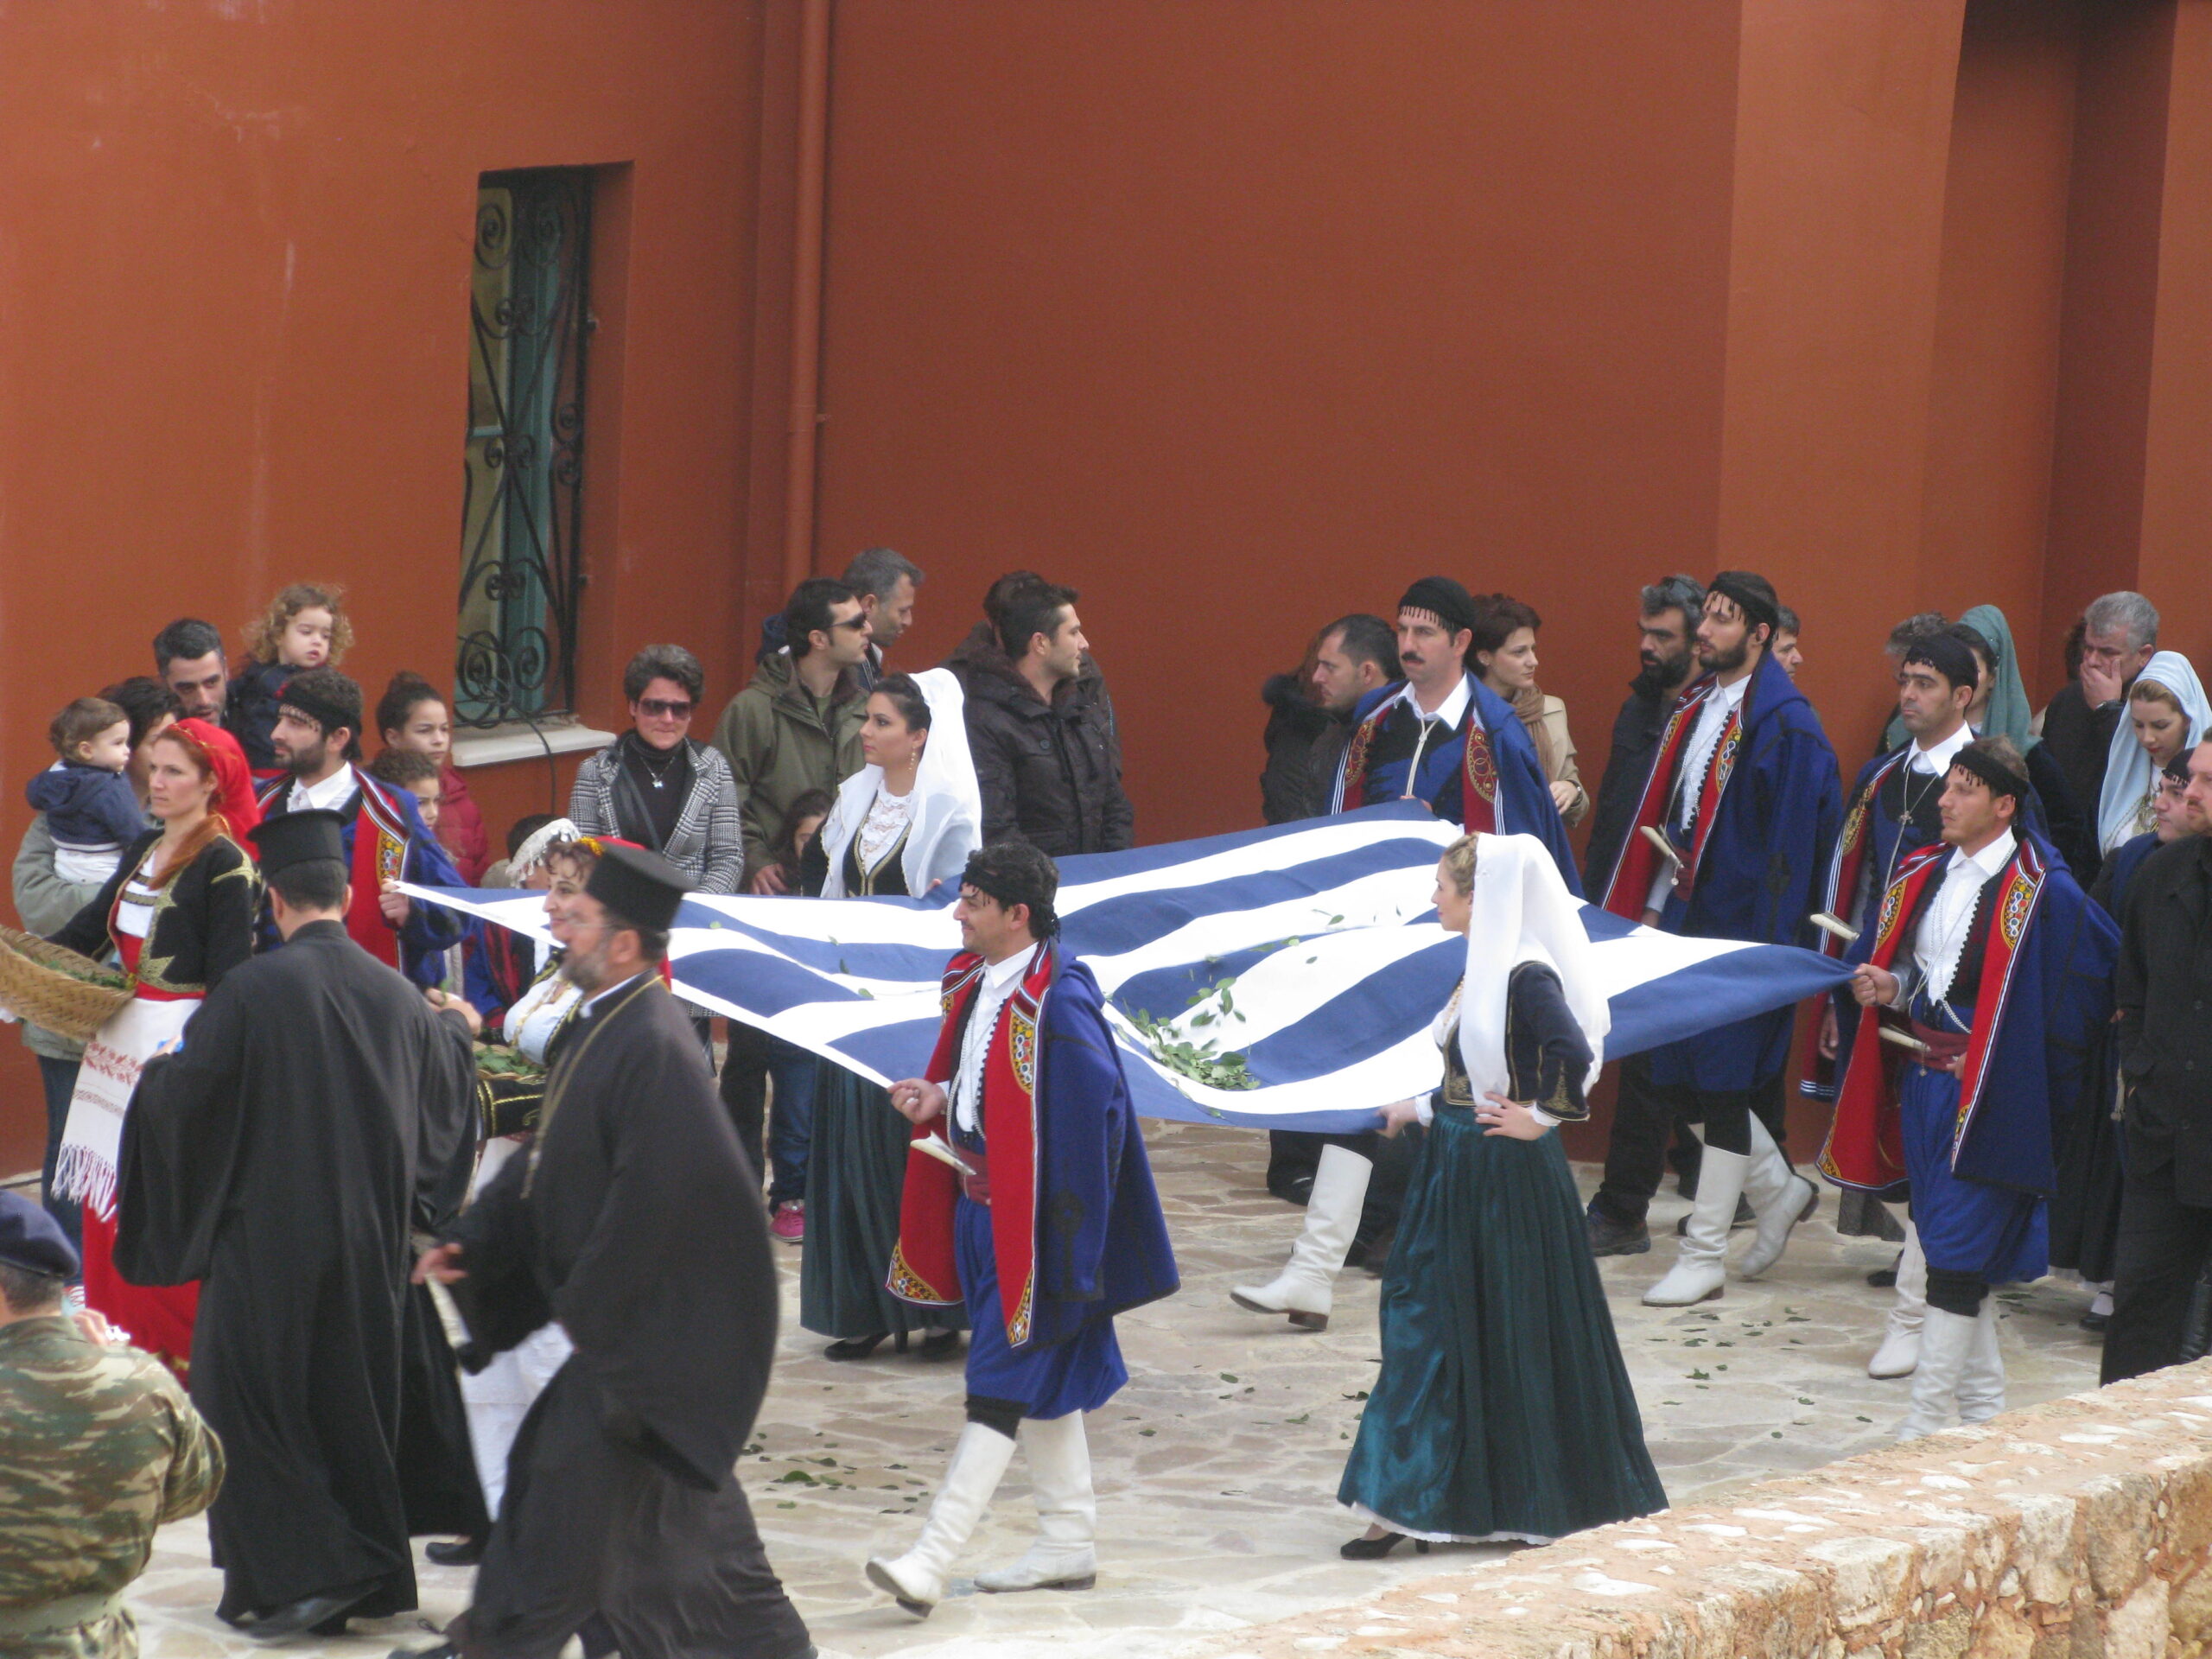 Η Ελληνική σημαία που υφάνθηκε με φυσικό μετάξι από υφάντριες-μέλη της Αποστολής Πηνελόπη Gandhi, υψώνεται στις 1 Δεκεμβρίου 2013, στο Φρούριο Φιρκά των Χανίων, για την επέτειο των 100 χρόνων της Ένωσης